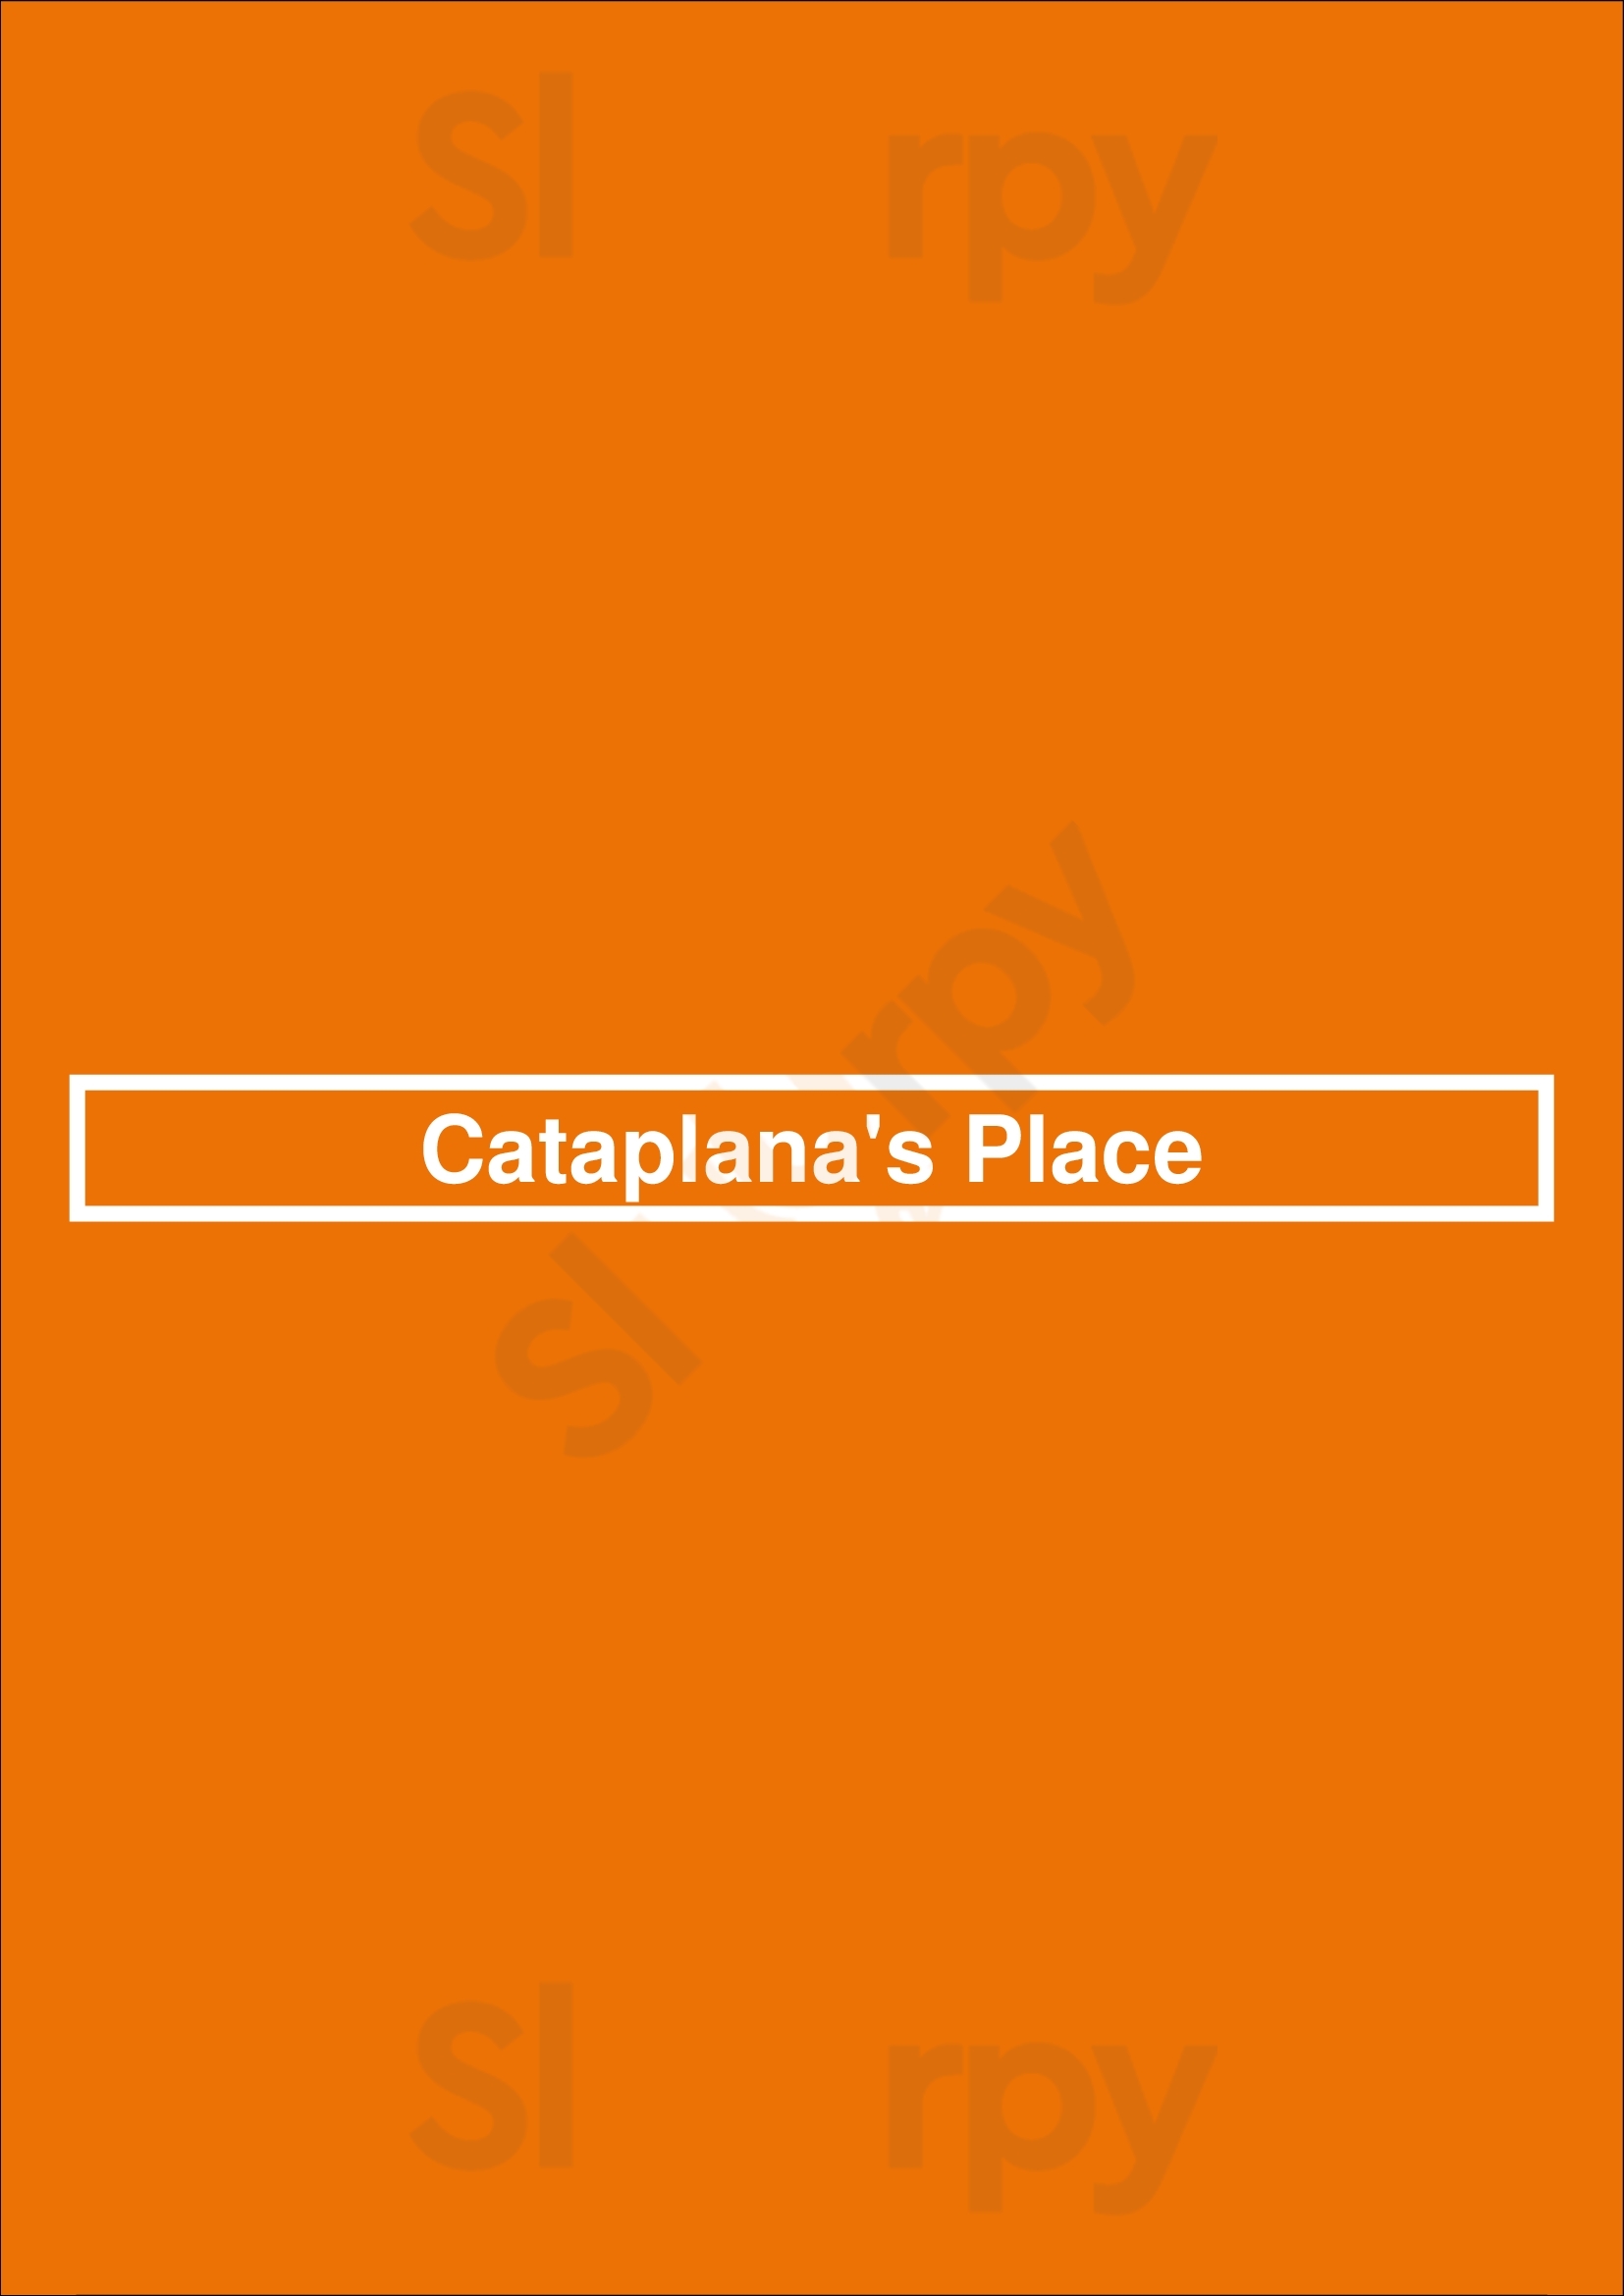 Cataplana's Place Faro Menu - 1